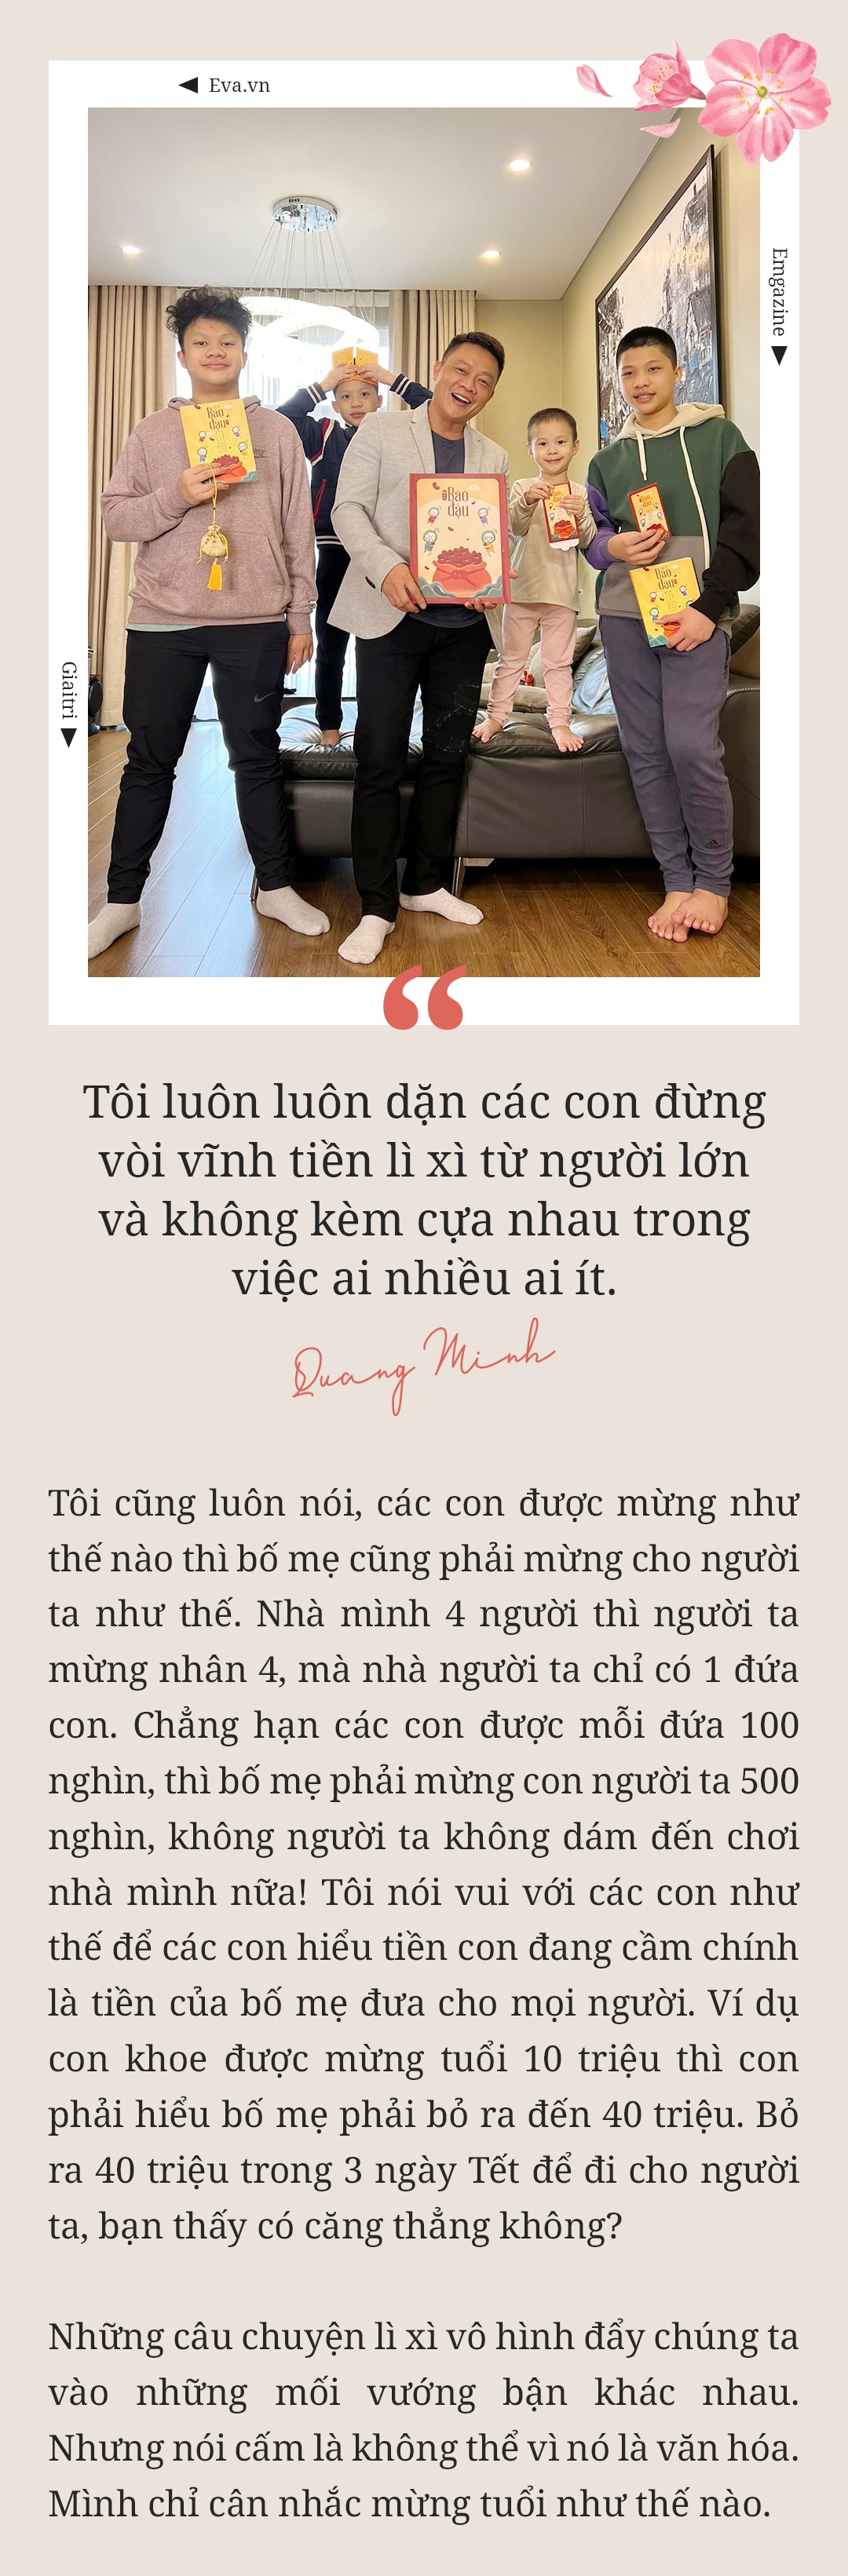 MC Trần Quang Minh: amp;#34;Nếu mừng tuổi ít, các con thấy buồn một thì mình tủi thân mườiamp;#34; - 32